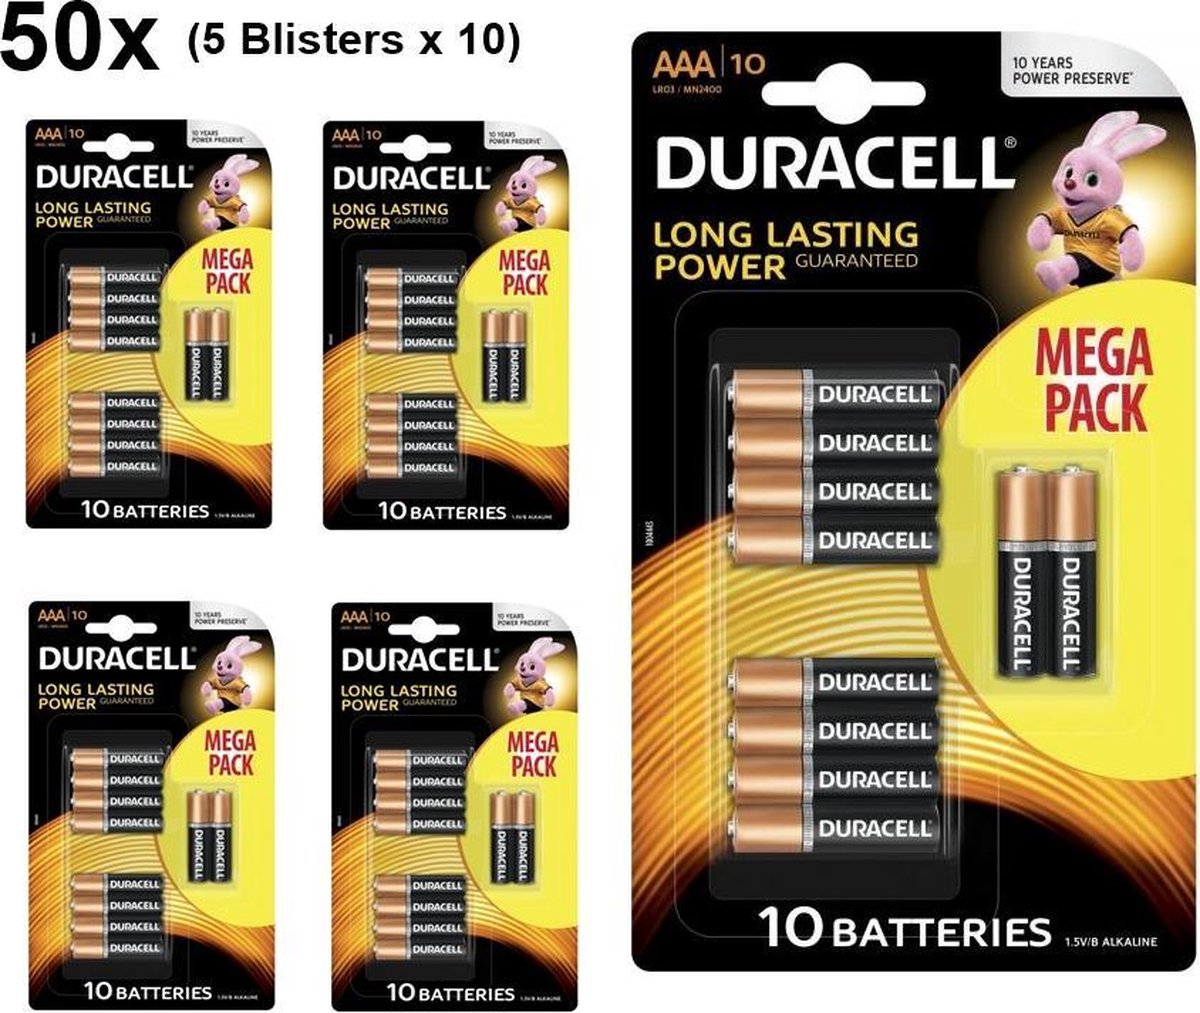 50 Stuks (5 Blisters a 10st) - Duracell MEGA PACK LR03 / AAA / R03 / MN 2400 1.5V alkaline batterij